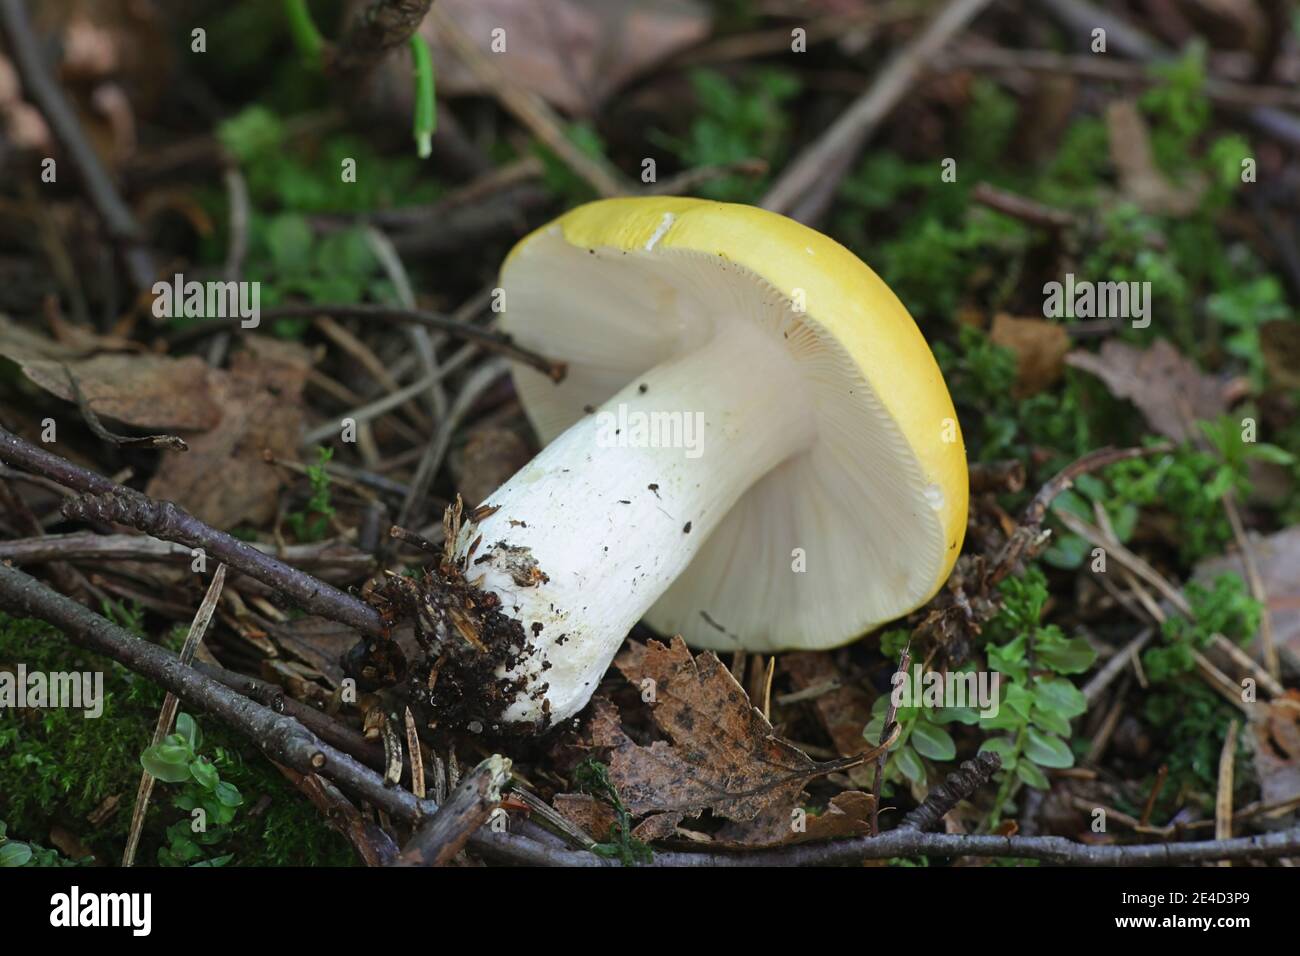 Psathyrella claroflava, bekannt als der gelbe Sumpf psathyrella oder gelbe Sumpf brittlegill, wilde essbare Pilze aus Finnland Stockfoto